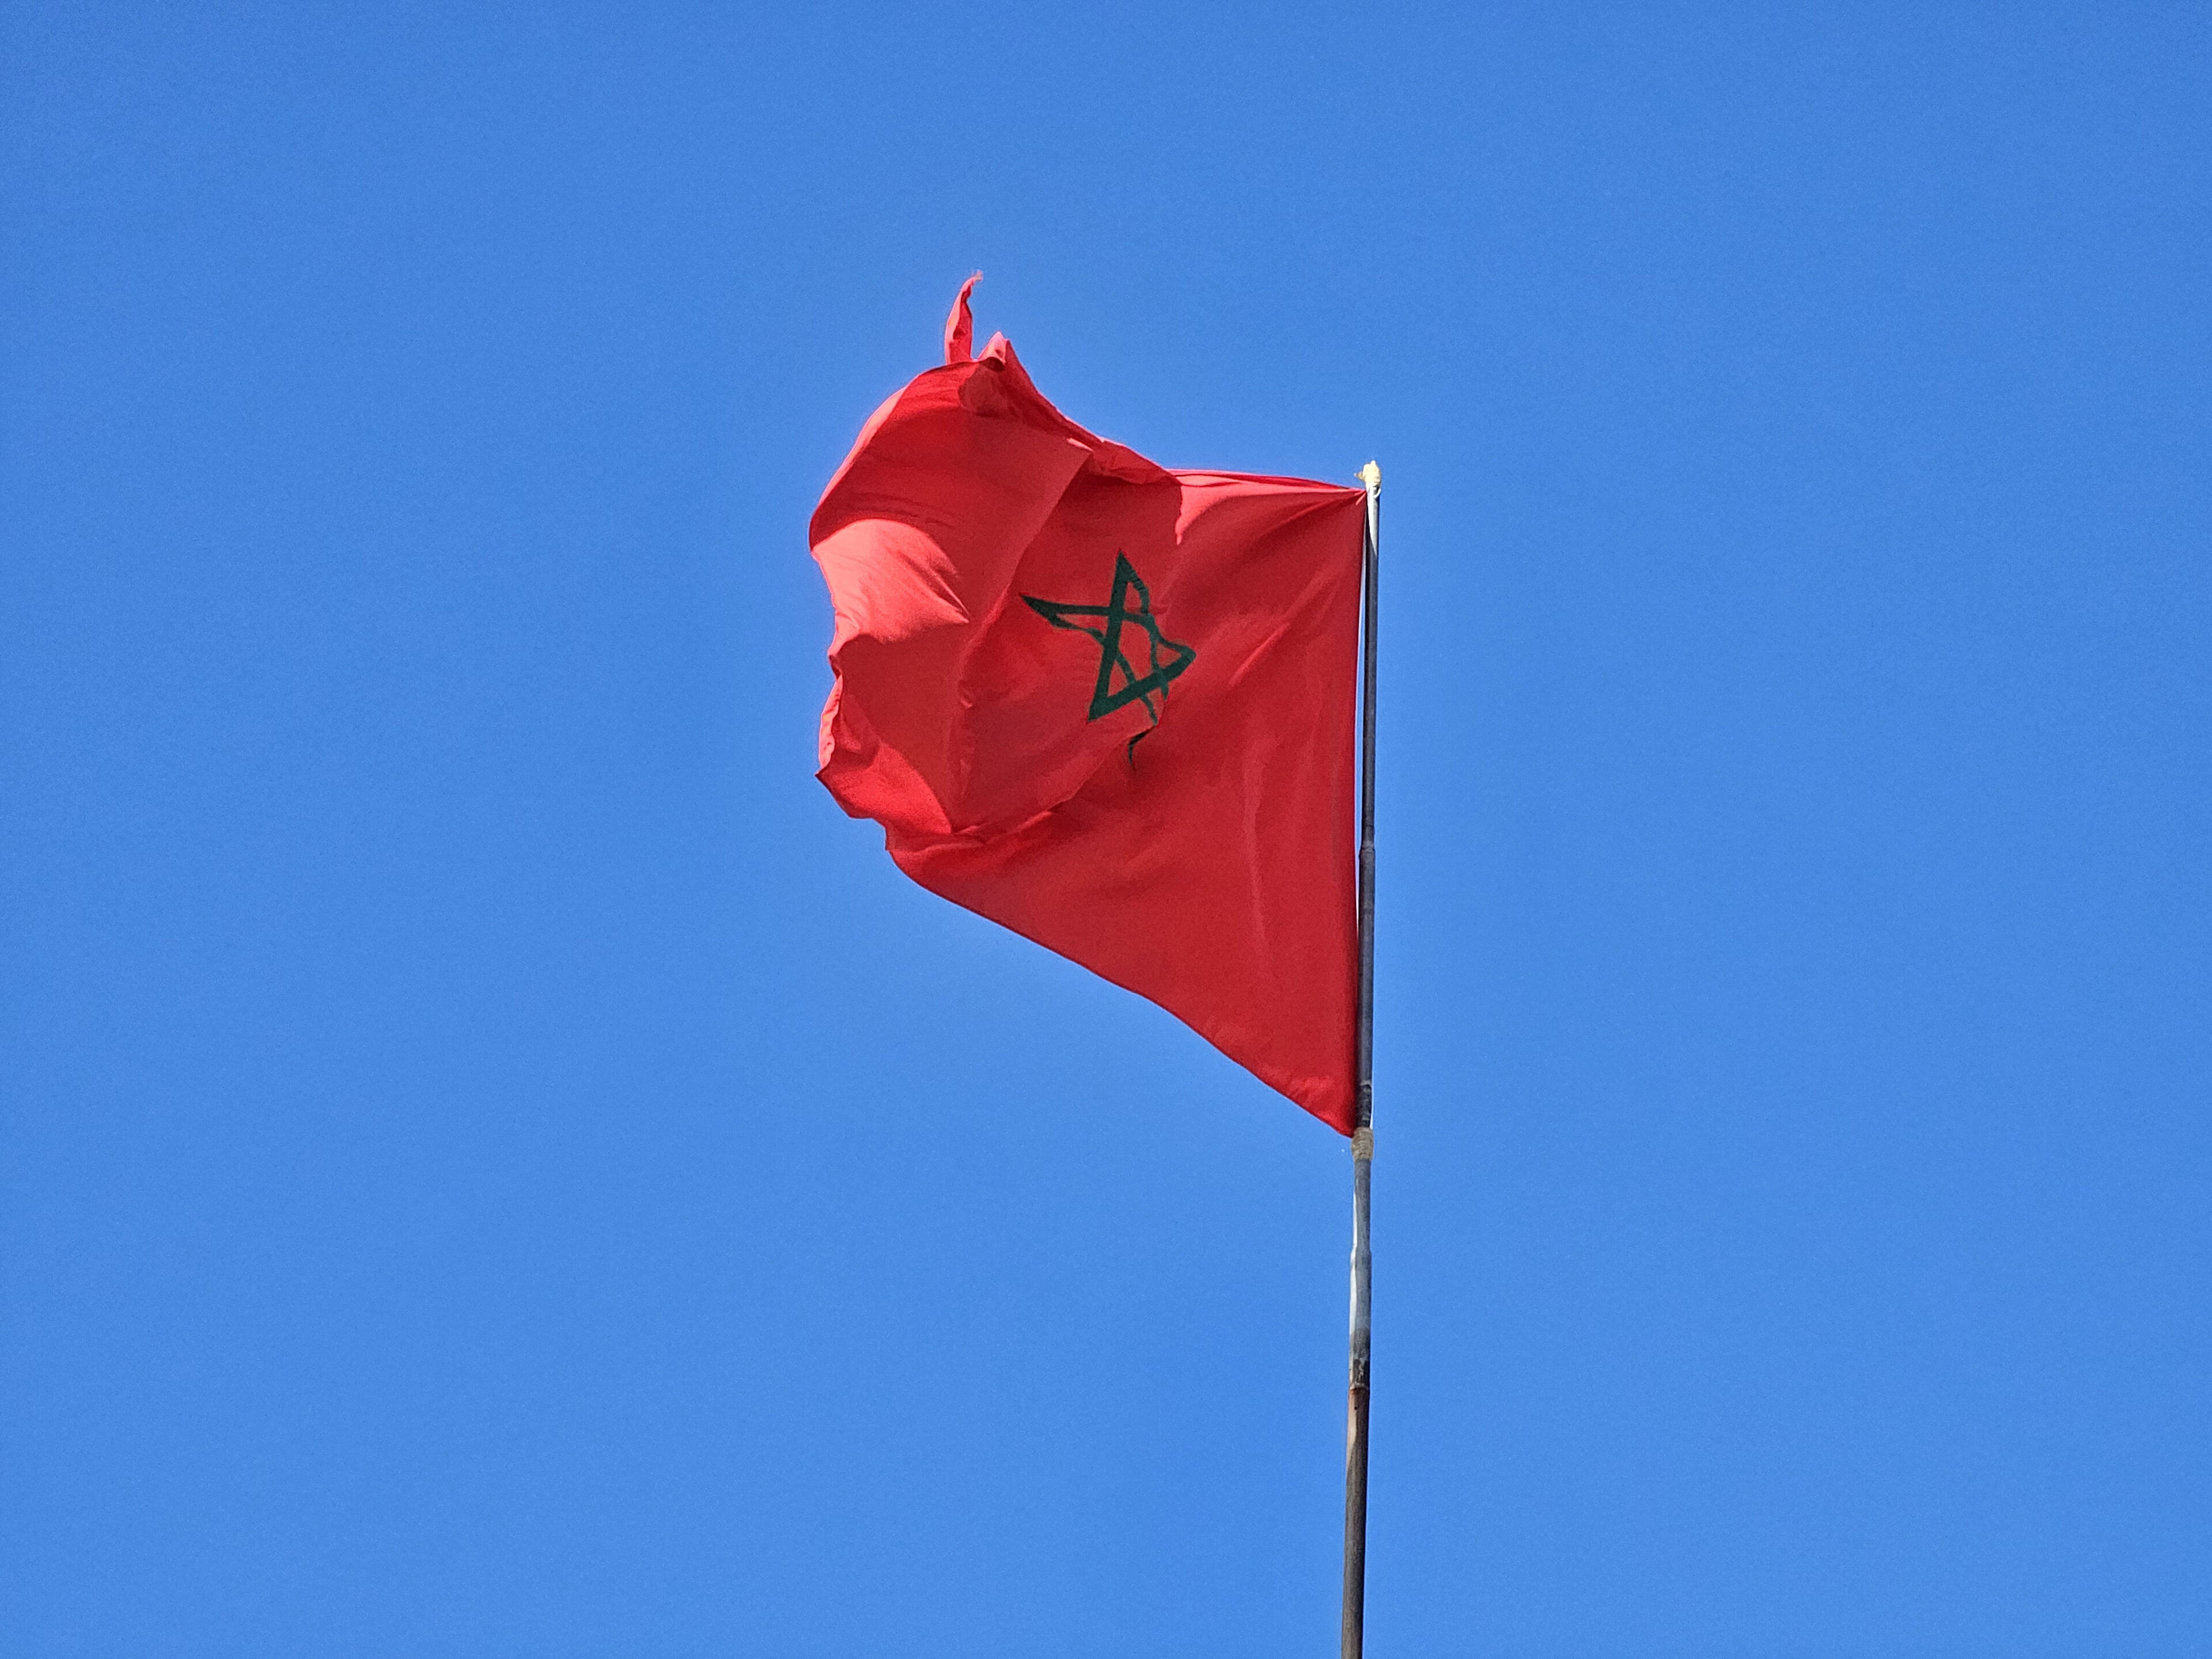 Bandera de Marruecos ondeando sobre un cielo azul.